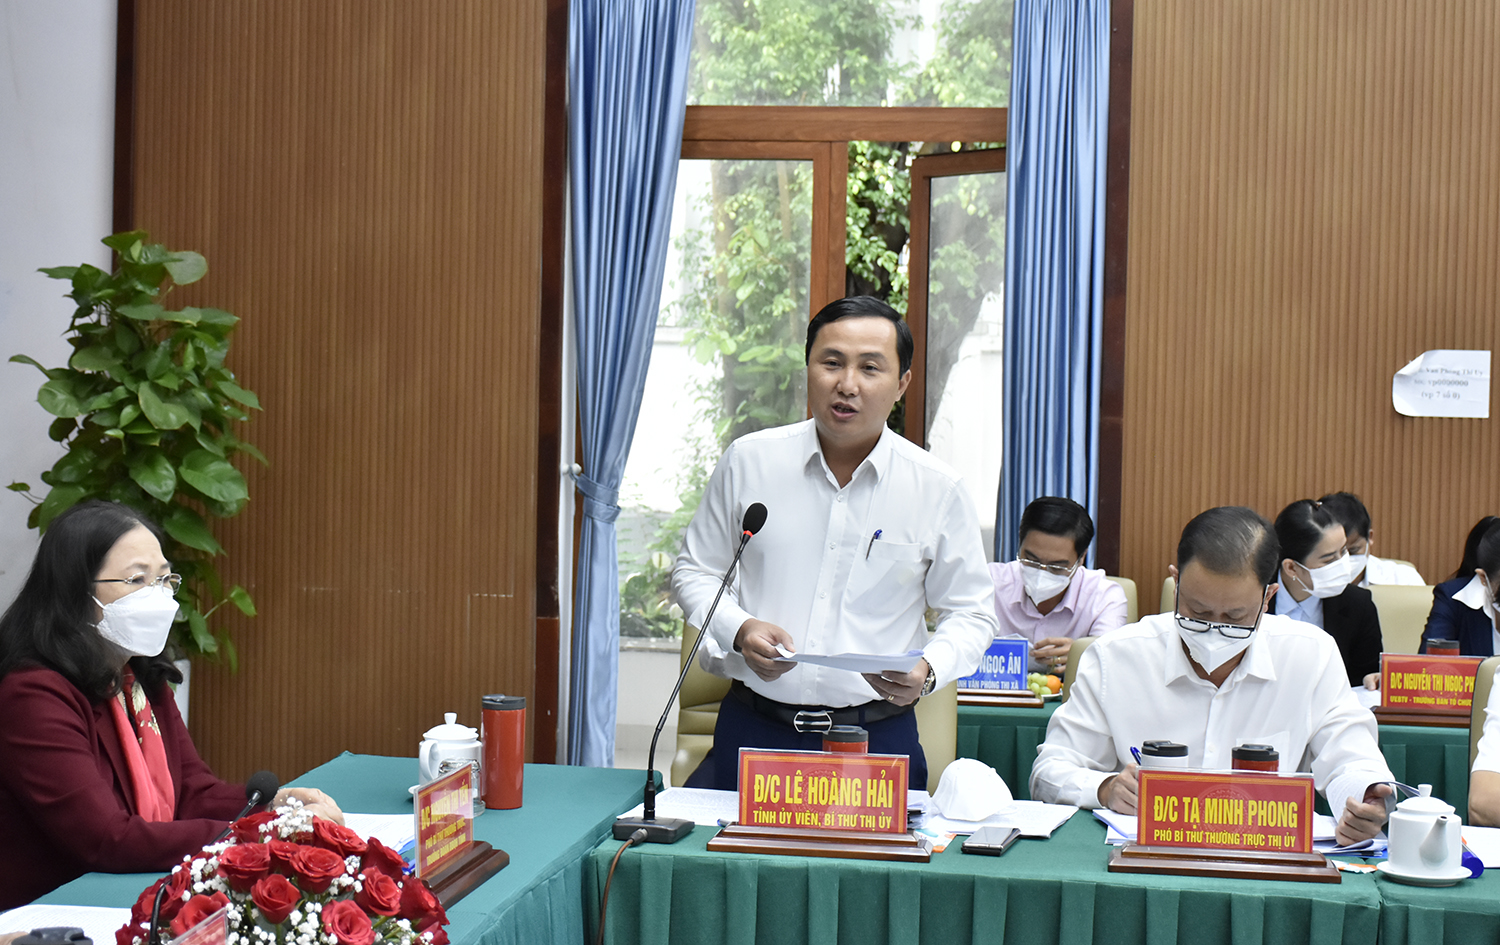 Ông Lê Hoàng Hải, Bí thư Thị ủy Phú Mỹ báo cáo với Ban Thường vụ Tỉnh ủy tình hình kinh tế-xã hội 3 tháng đầu năm trên địa bàn.